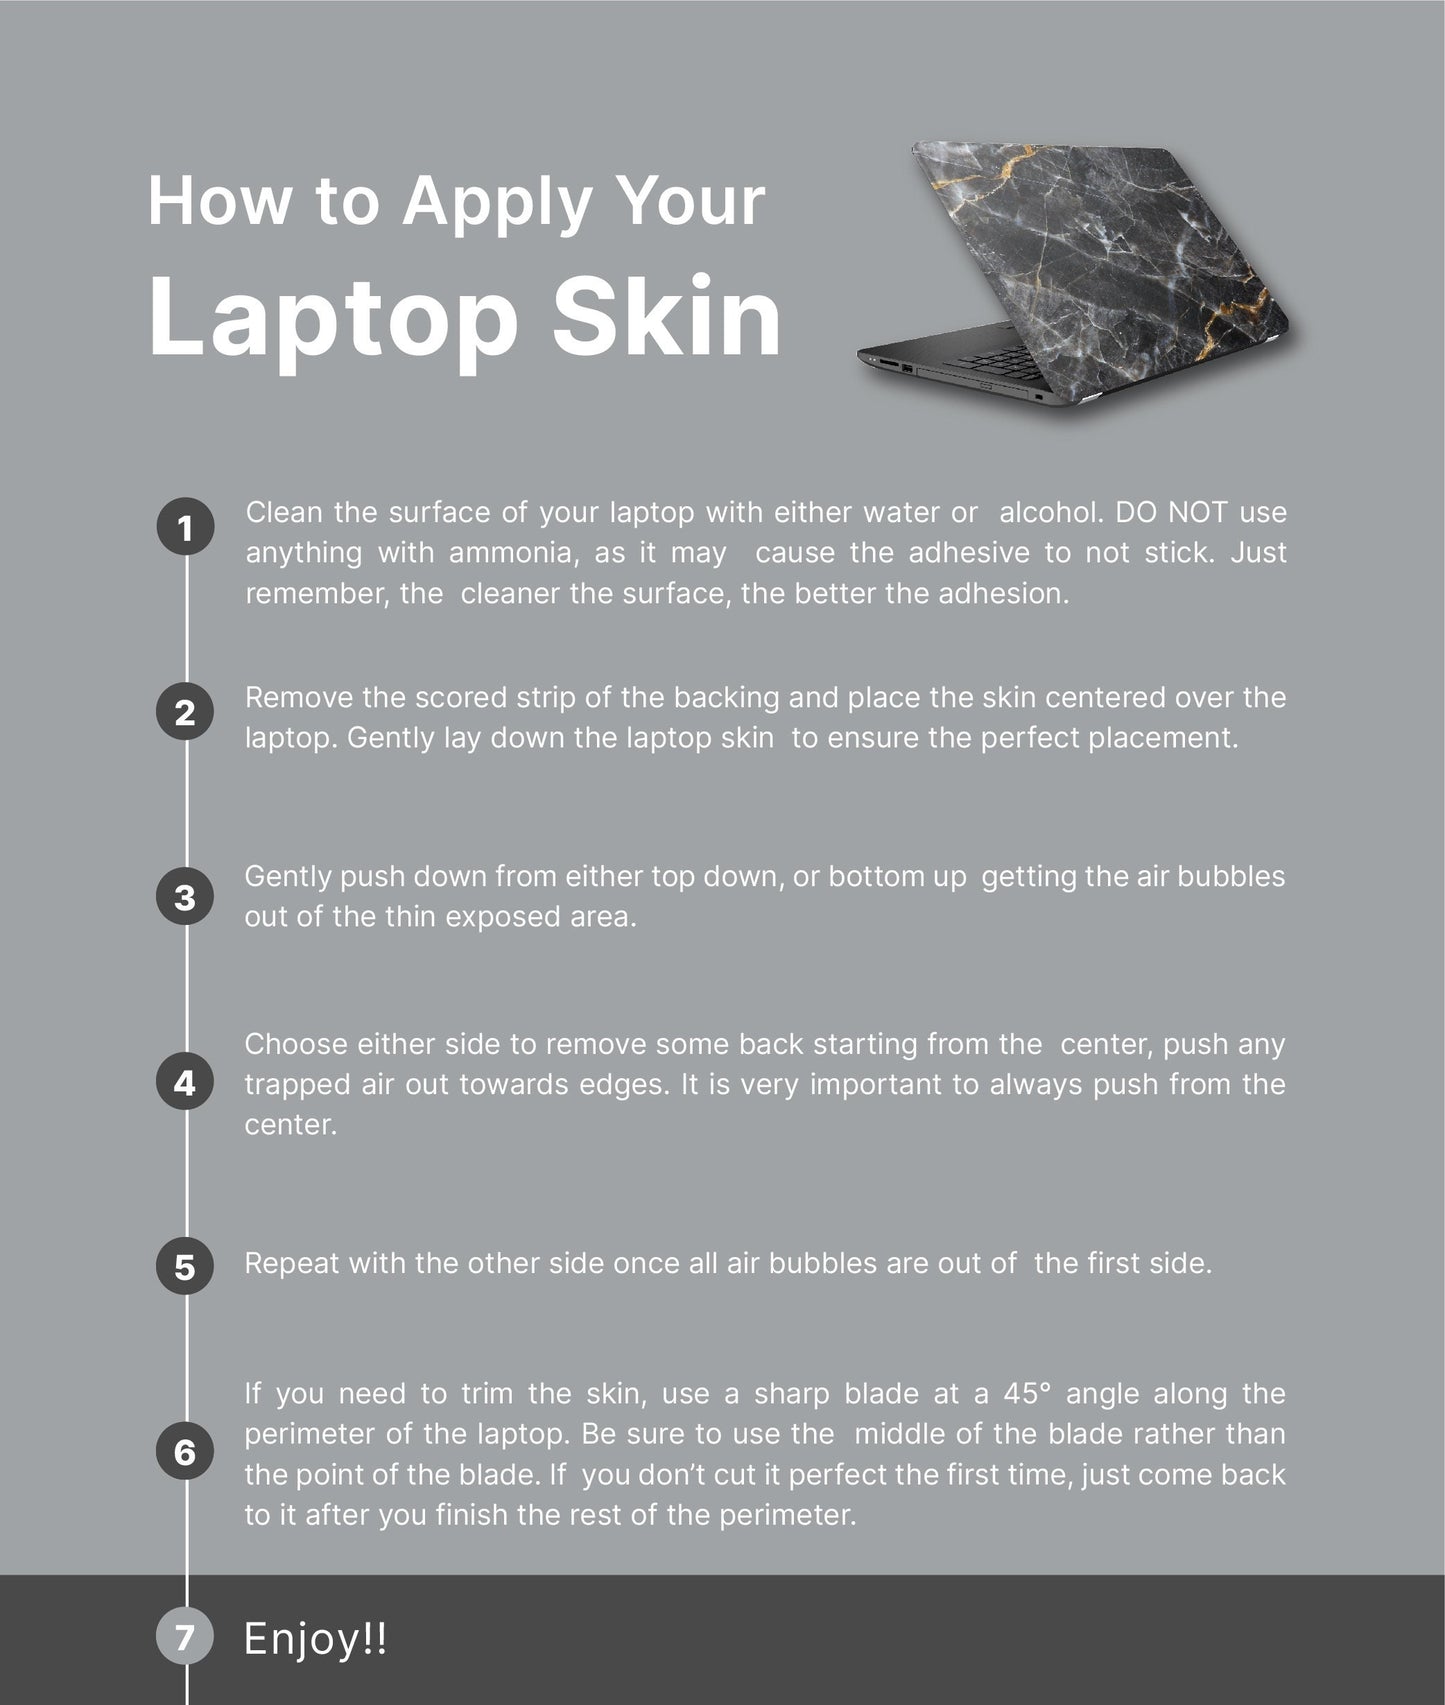 Mountain Trees Laptop Skin, Laptop Cover, Laptop Skins, Removable Laptop Skins, Laptop Decal, Customized Laptop Skin, Laptop Stickers 376